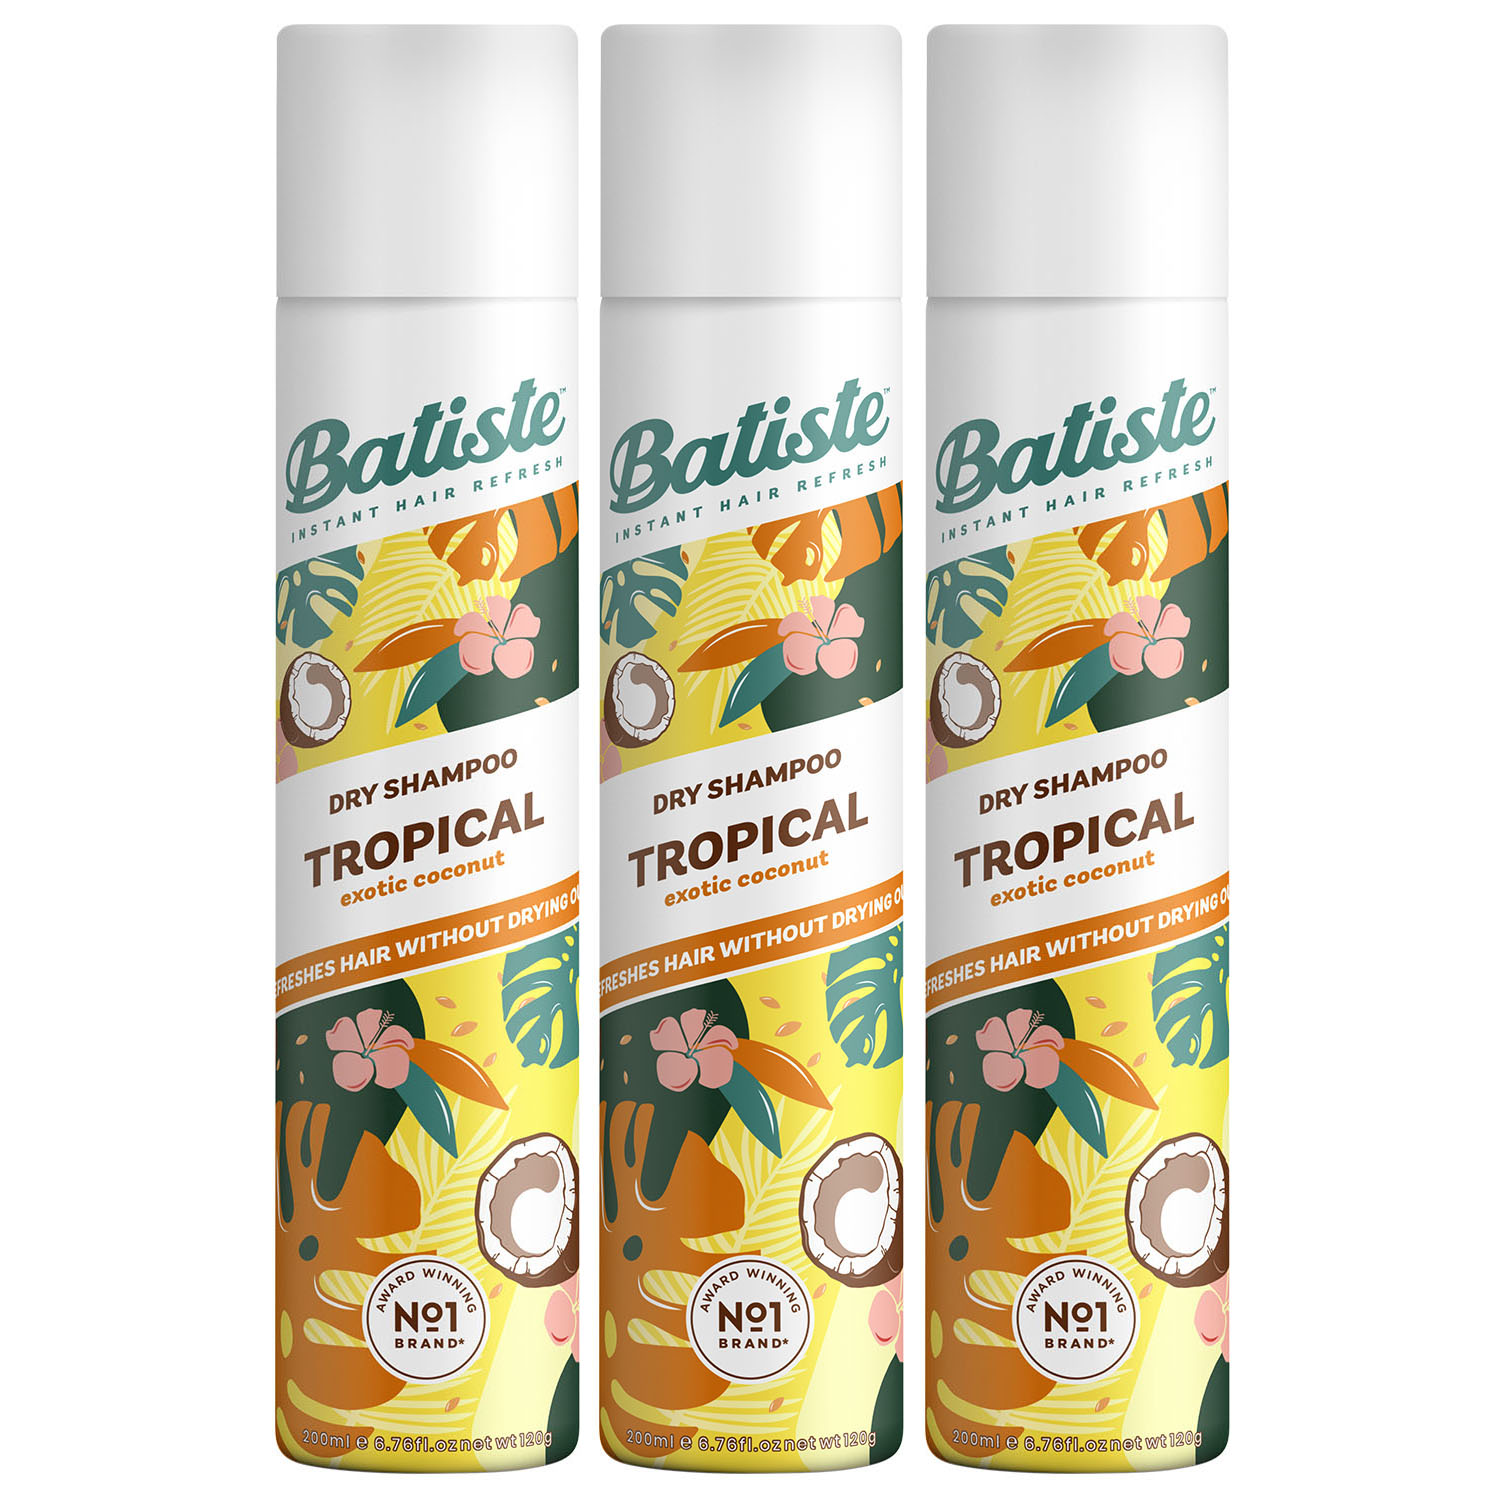 Batiste Комплект Tropical Сухой шампунь 3 шт х 200 мл (Batiste, Fragrance) batiste сухой шампунь tropical 200 мл